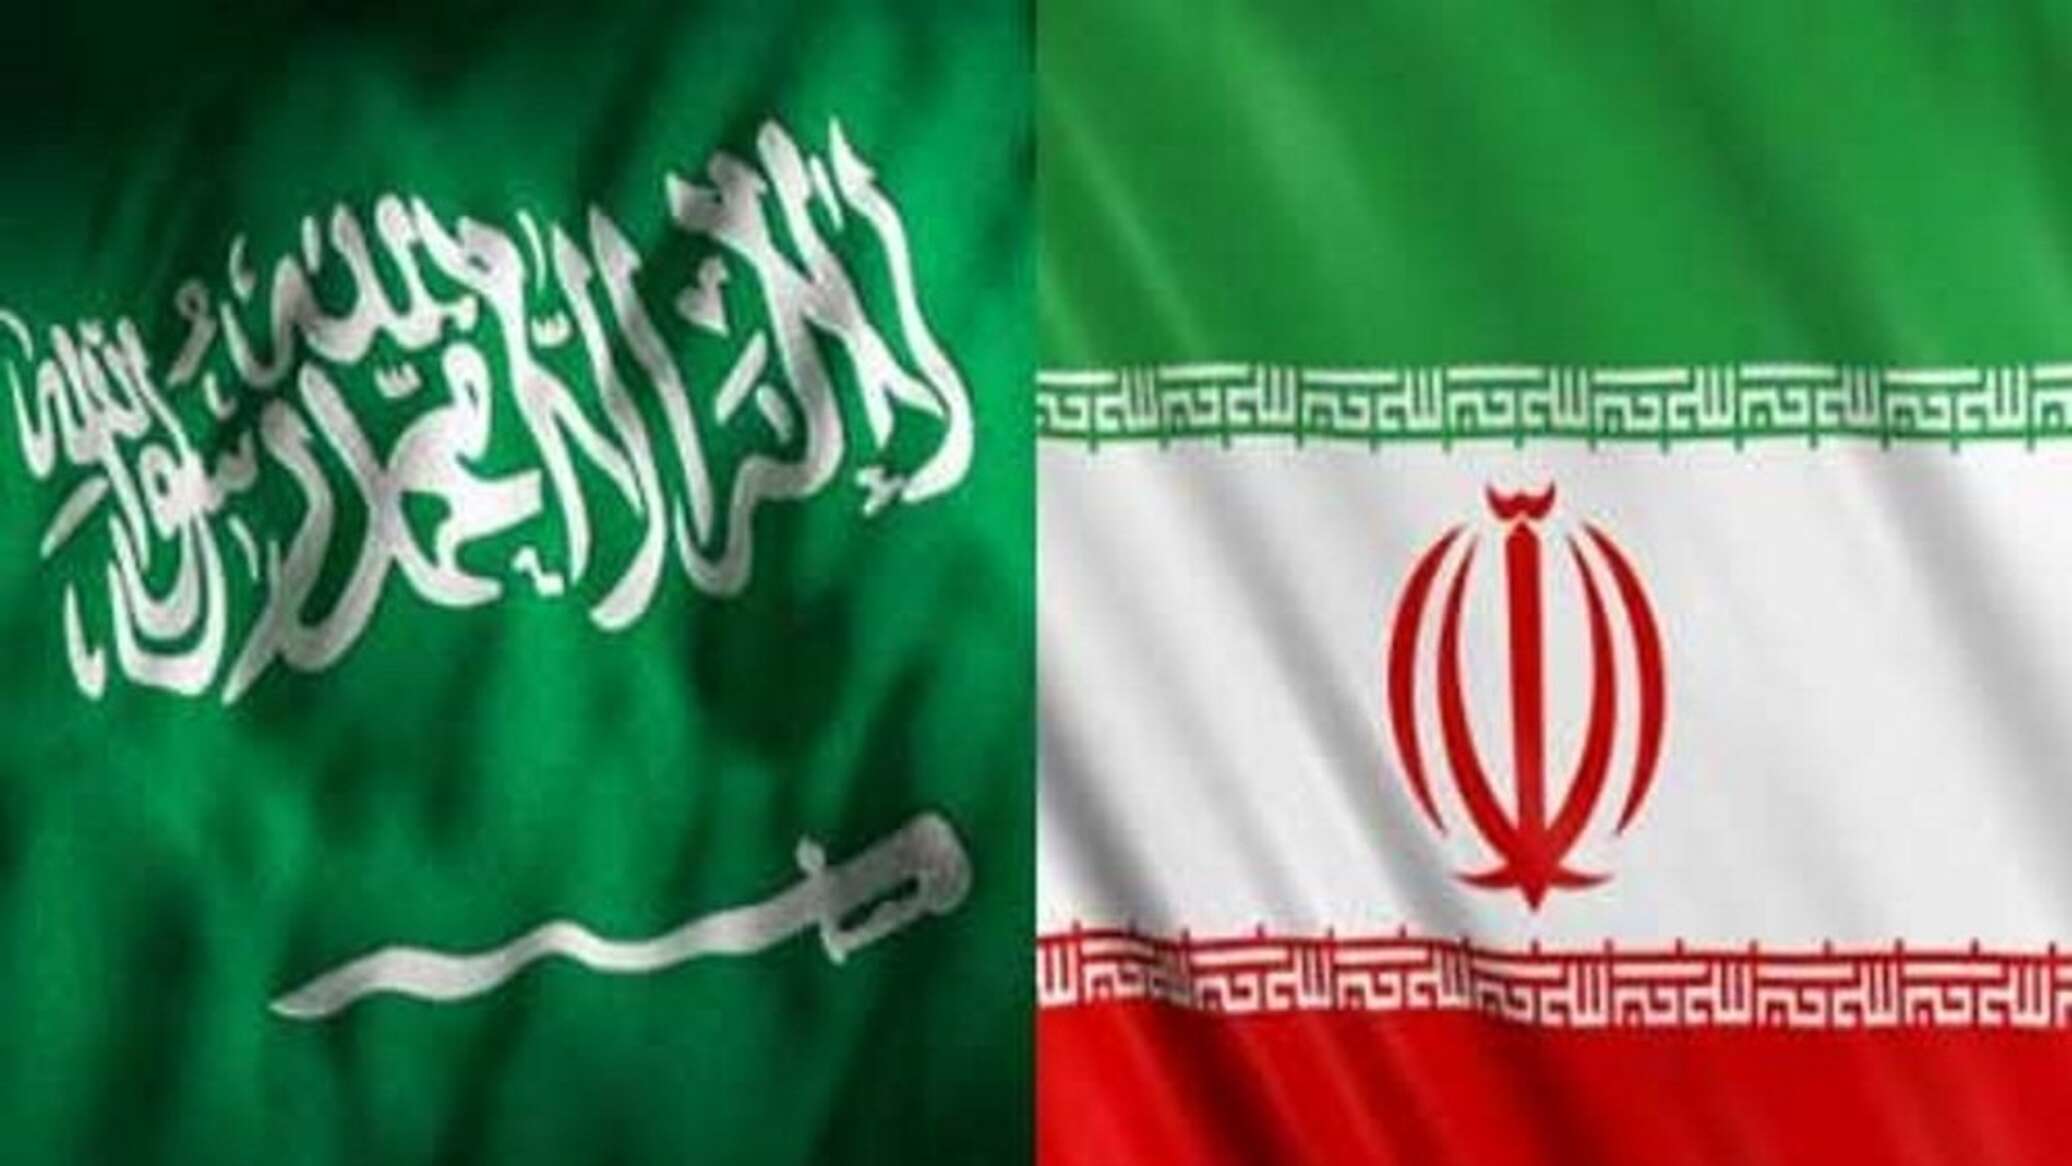 استئناف المفاوضات بين السعودية وإيران... لماذا الآن وما النتائج المتوقعة؟ -  05.01.2023, سبوتنيك عربي